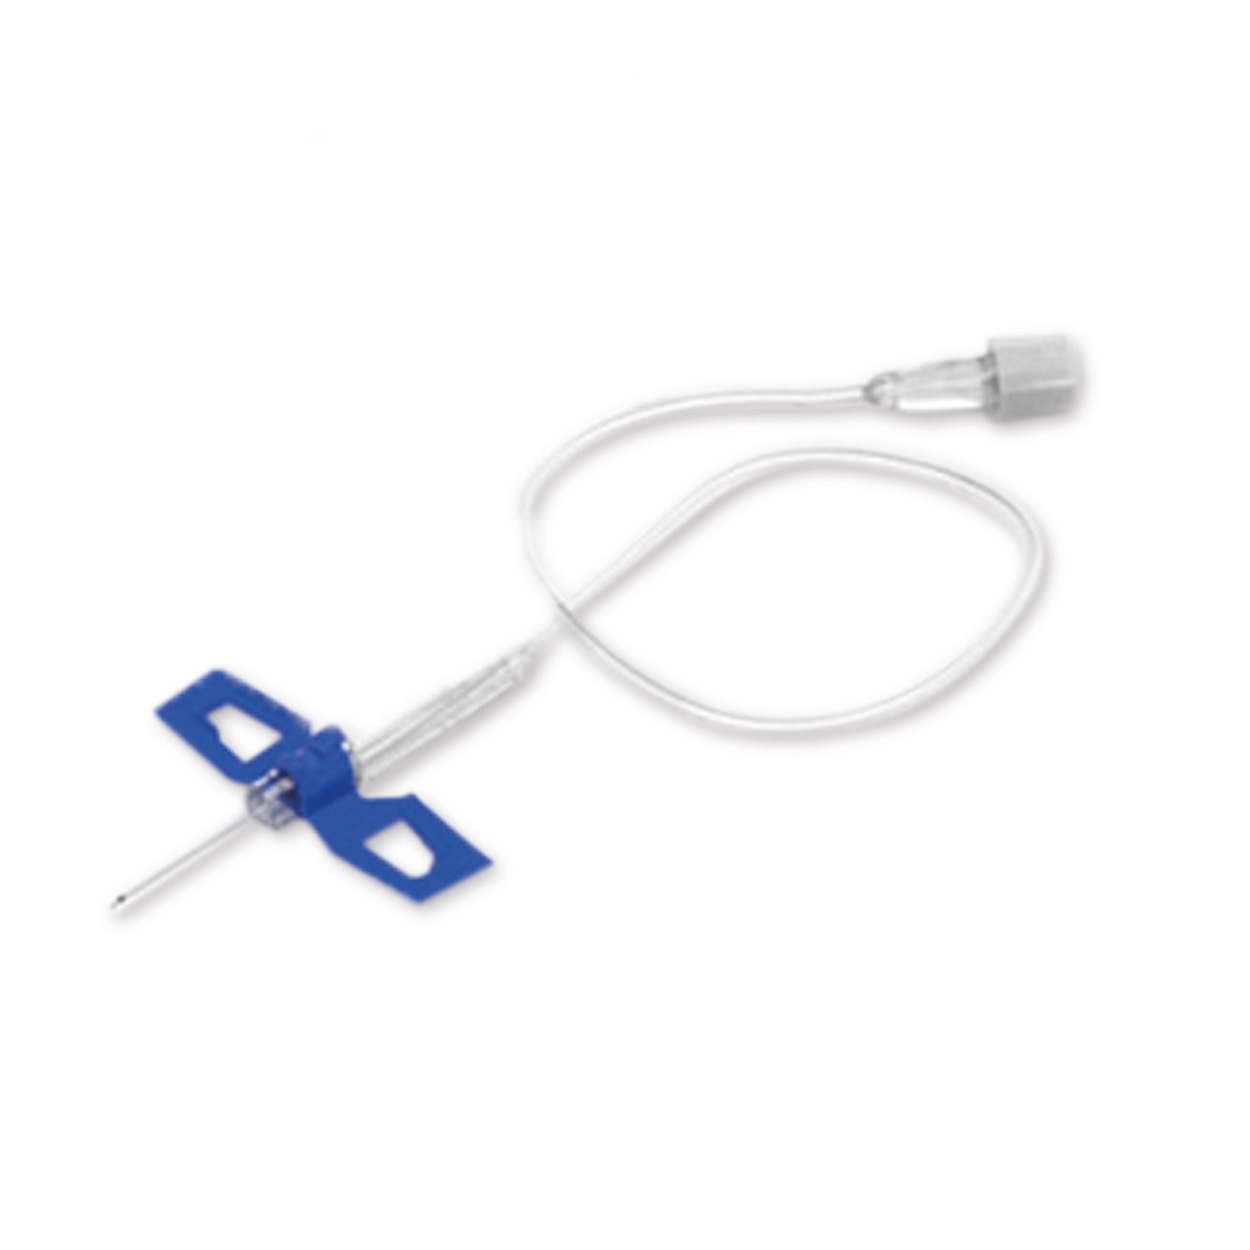 Venofix® Safety, 0,65 x 19 mm, 30 cm Schlauchlänge, G 23 blau - Packung à 50 Stück